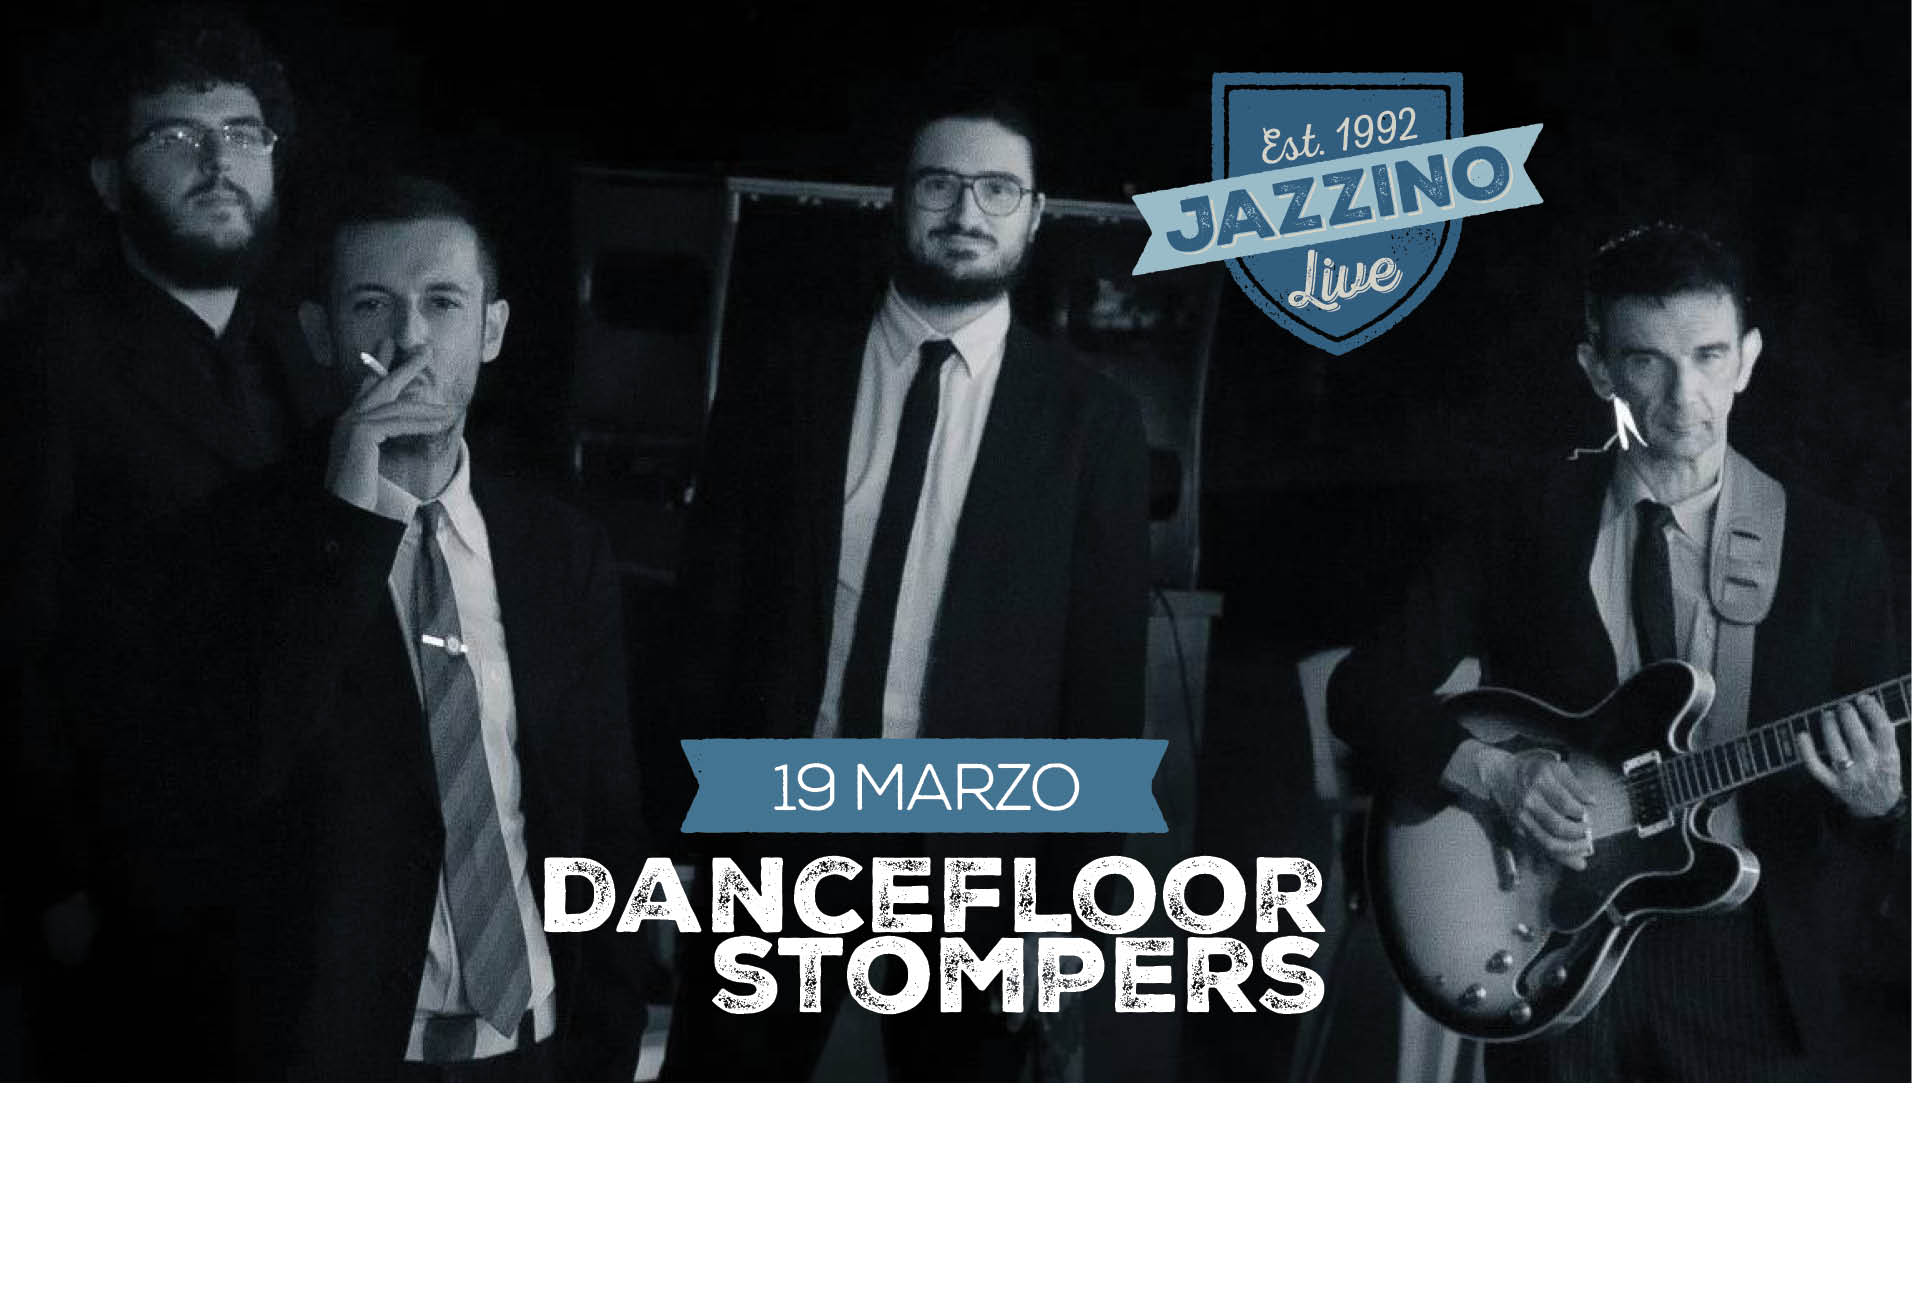 dancefloor-stompers-live-jazzino